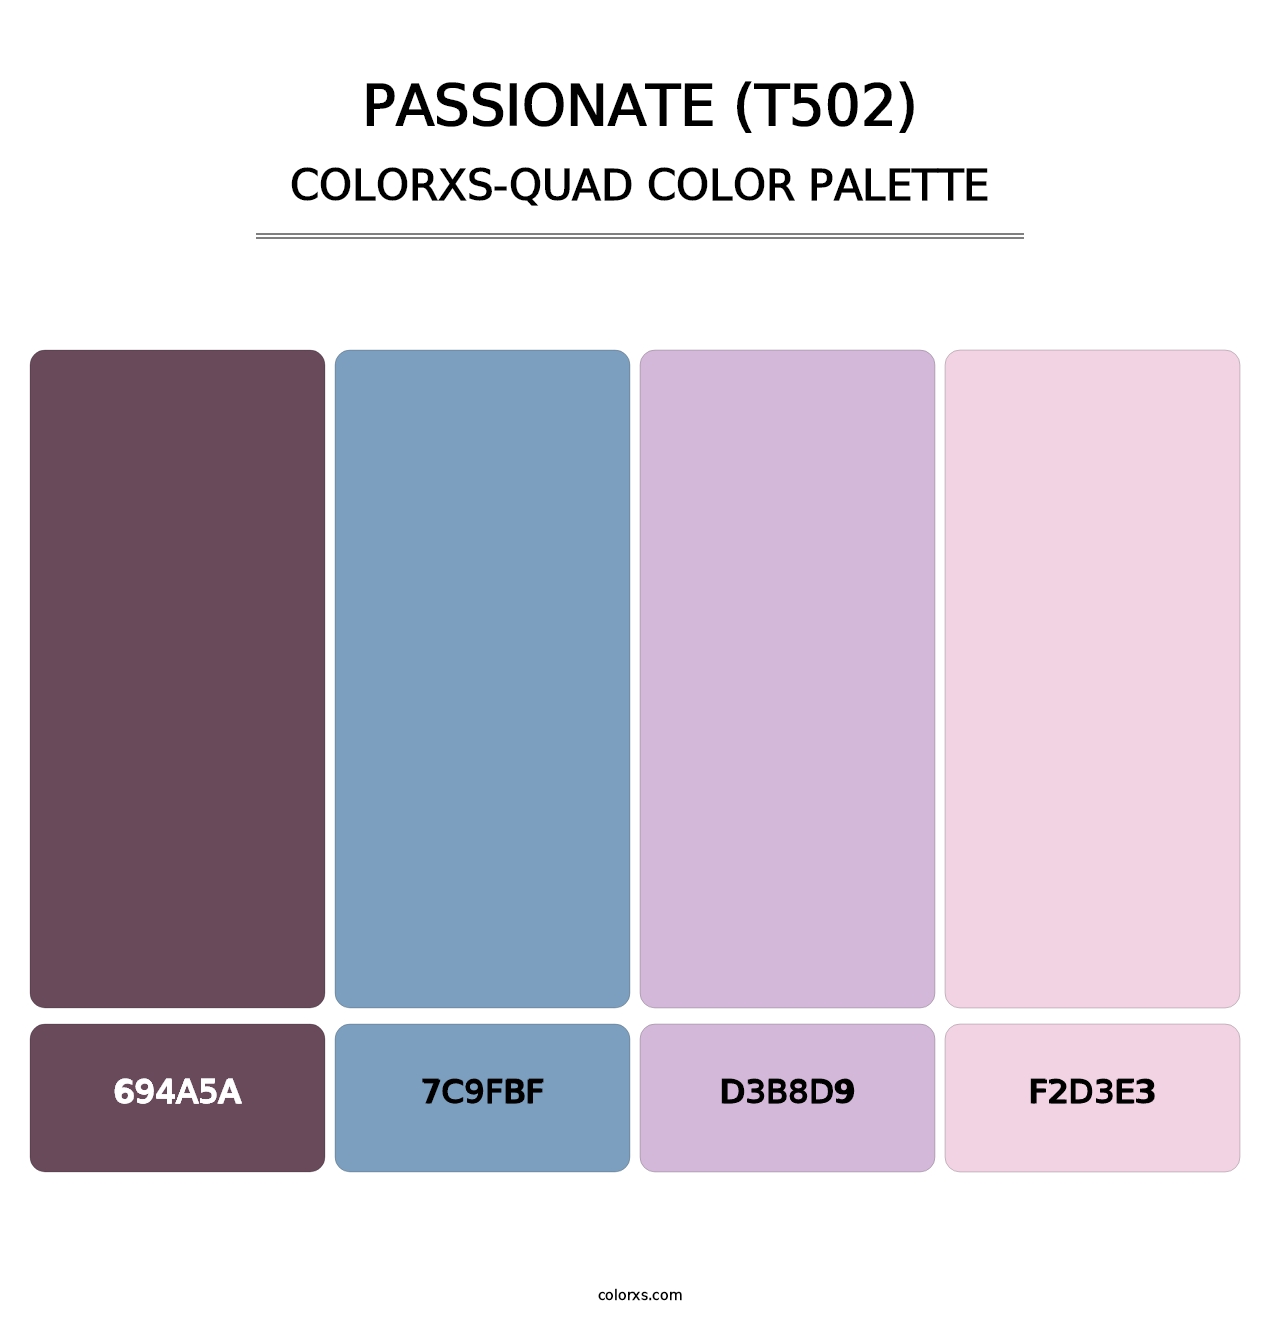 Passionate (T502) - Colorxs Quad Palette